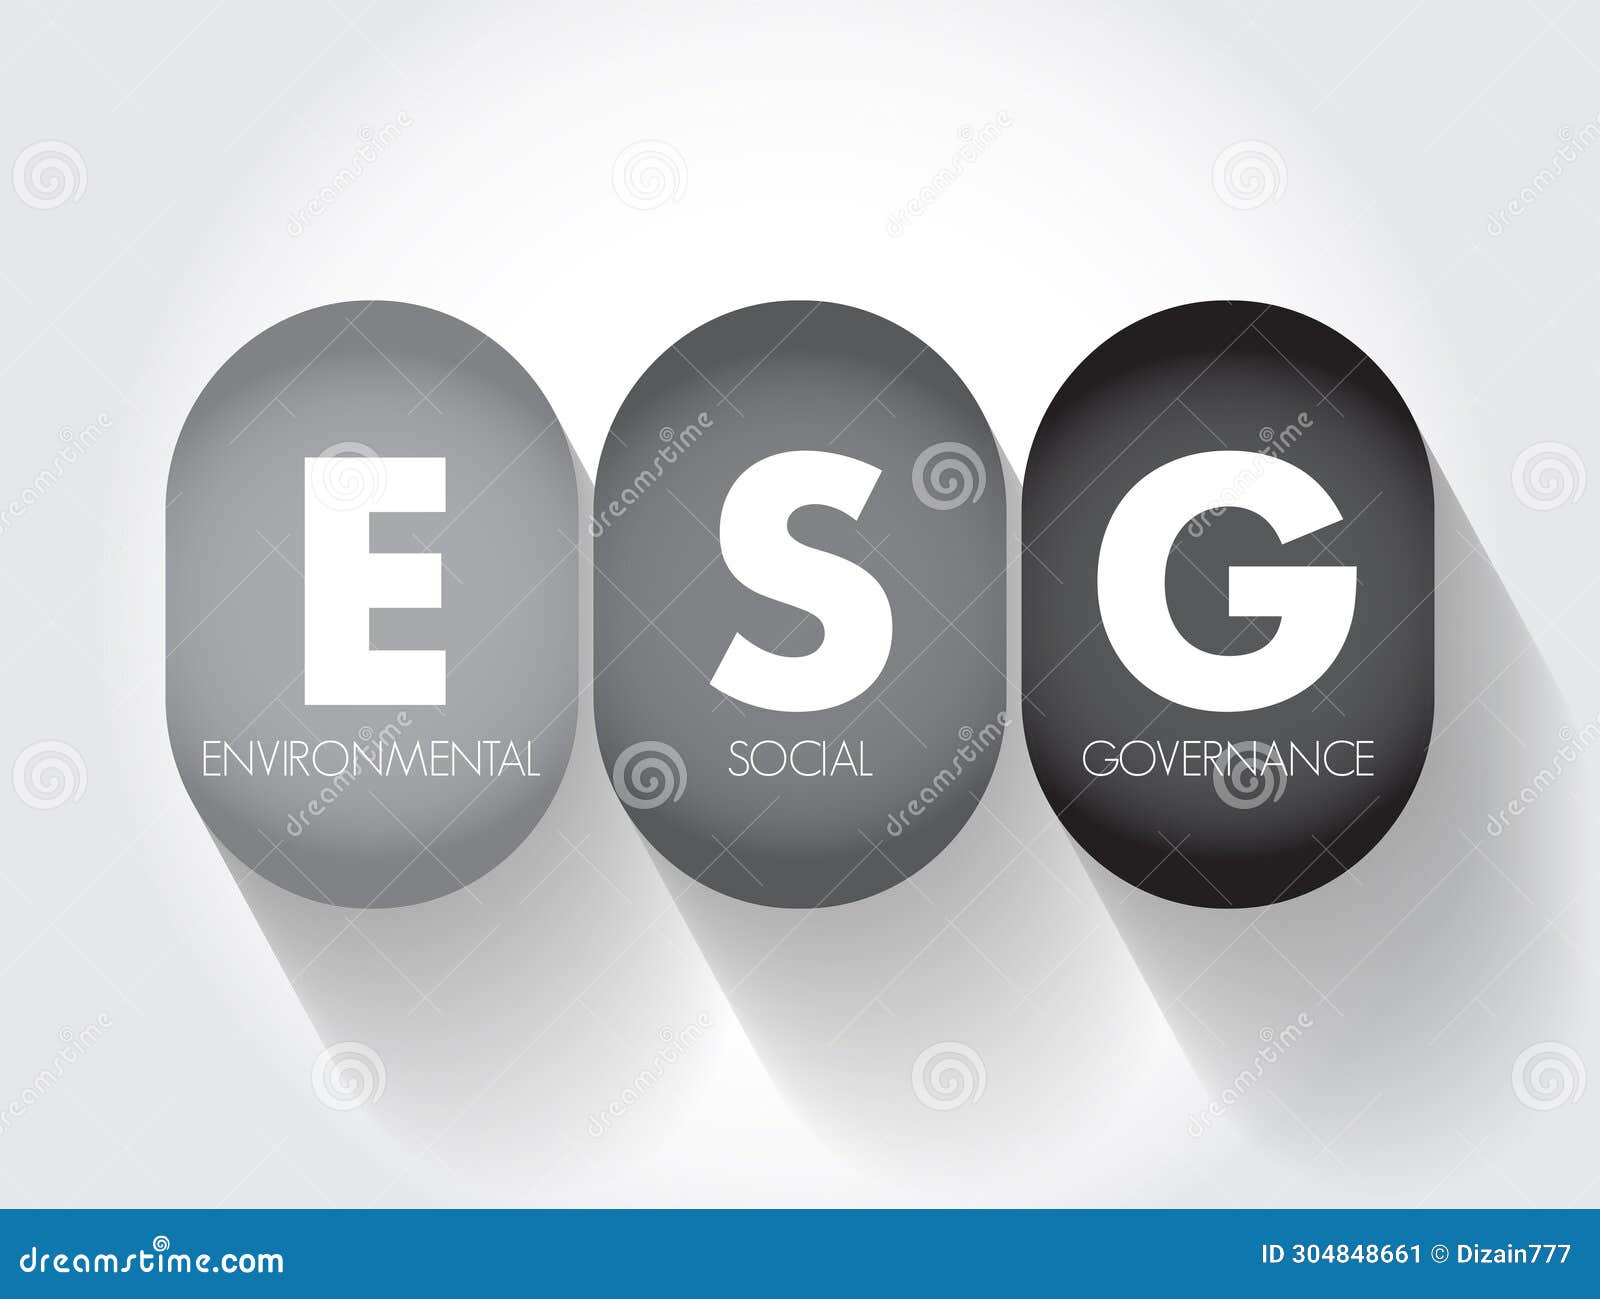 esg - environmental social governance acronym - evaluation of a firmâs collective consciousness